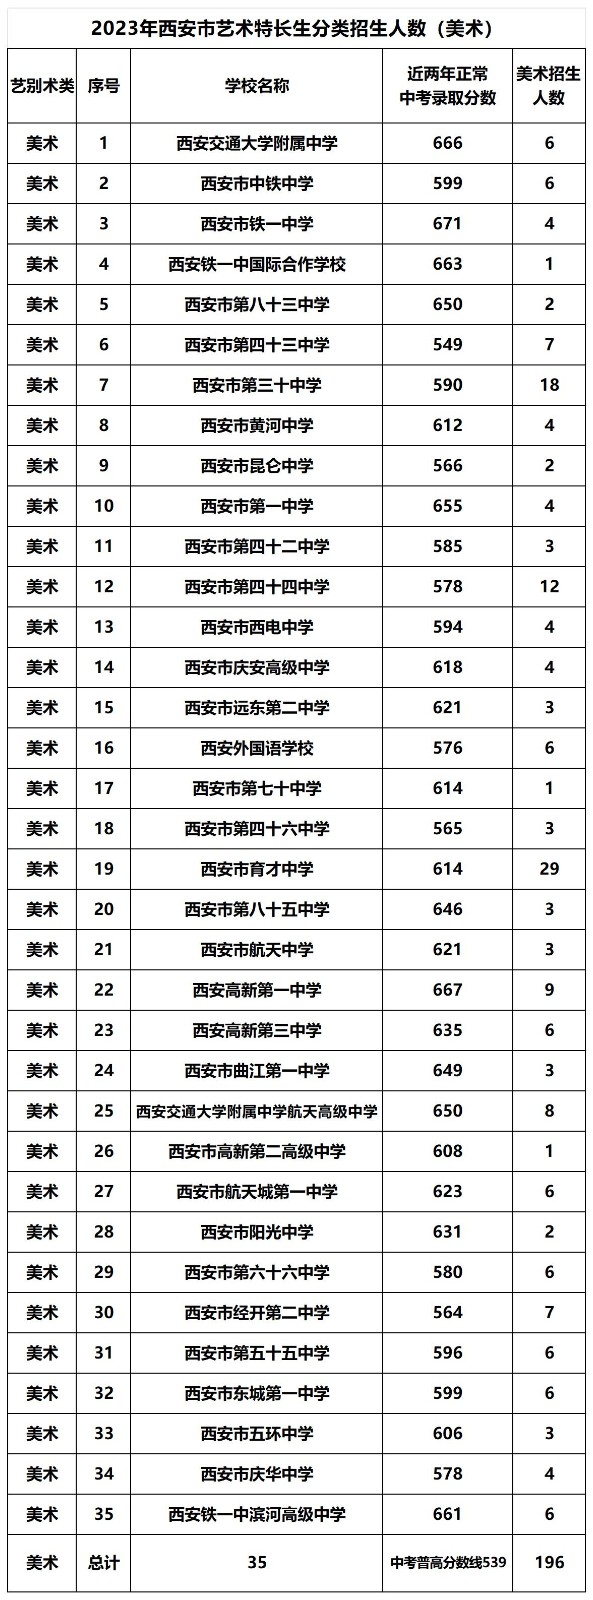 淄博市2015年考研报名人数较去年削减400余人